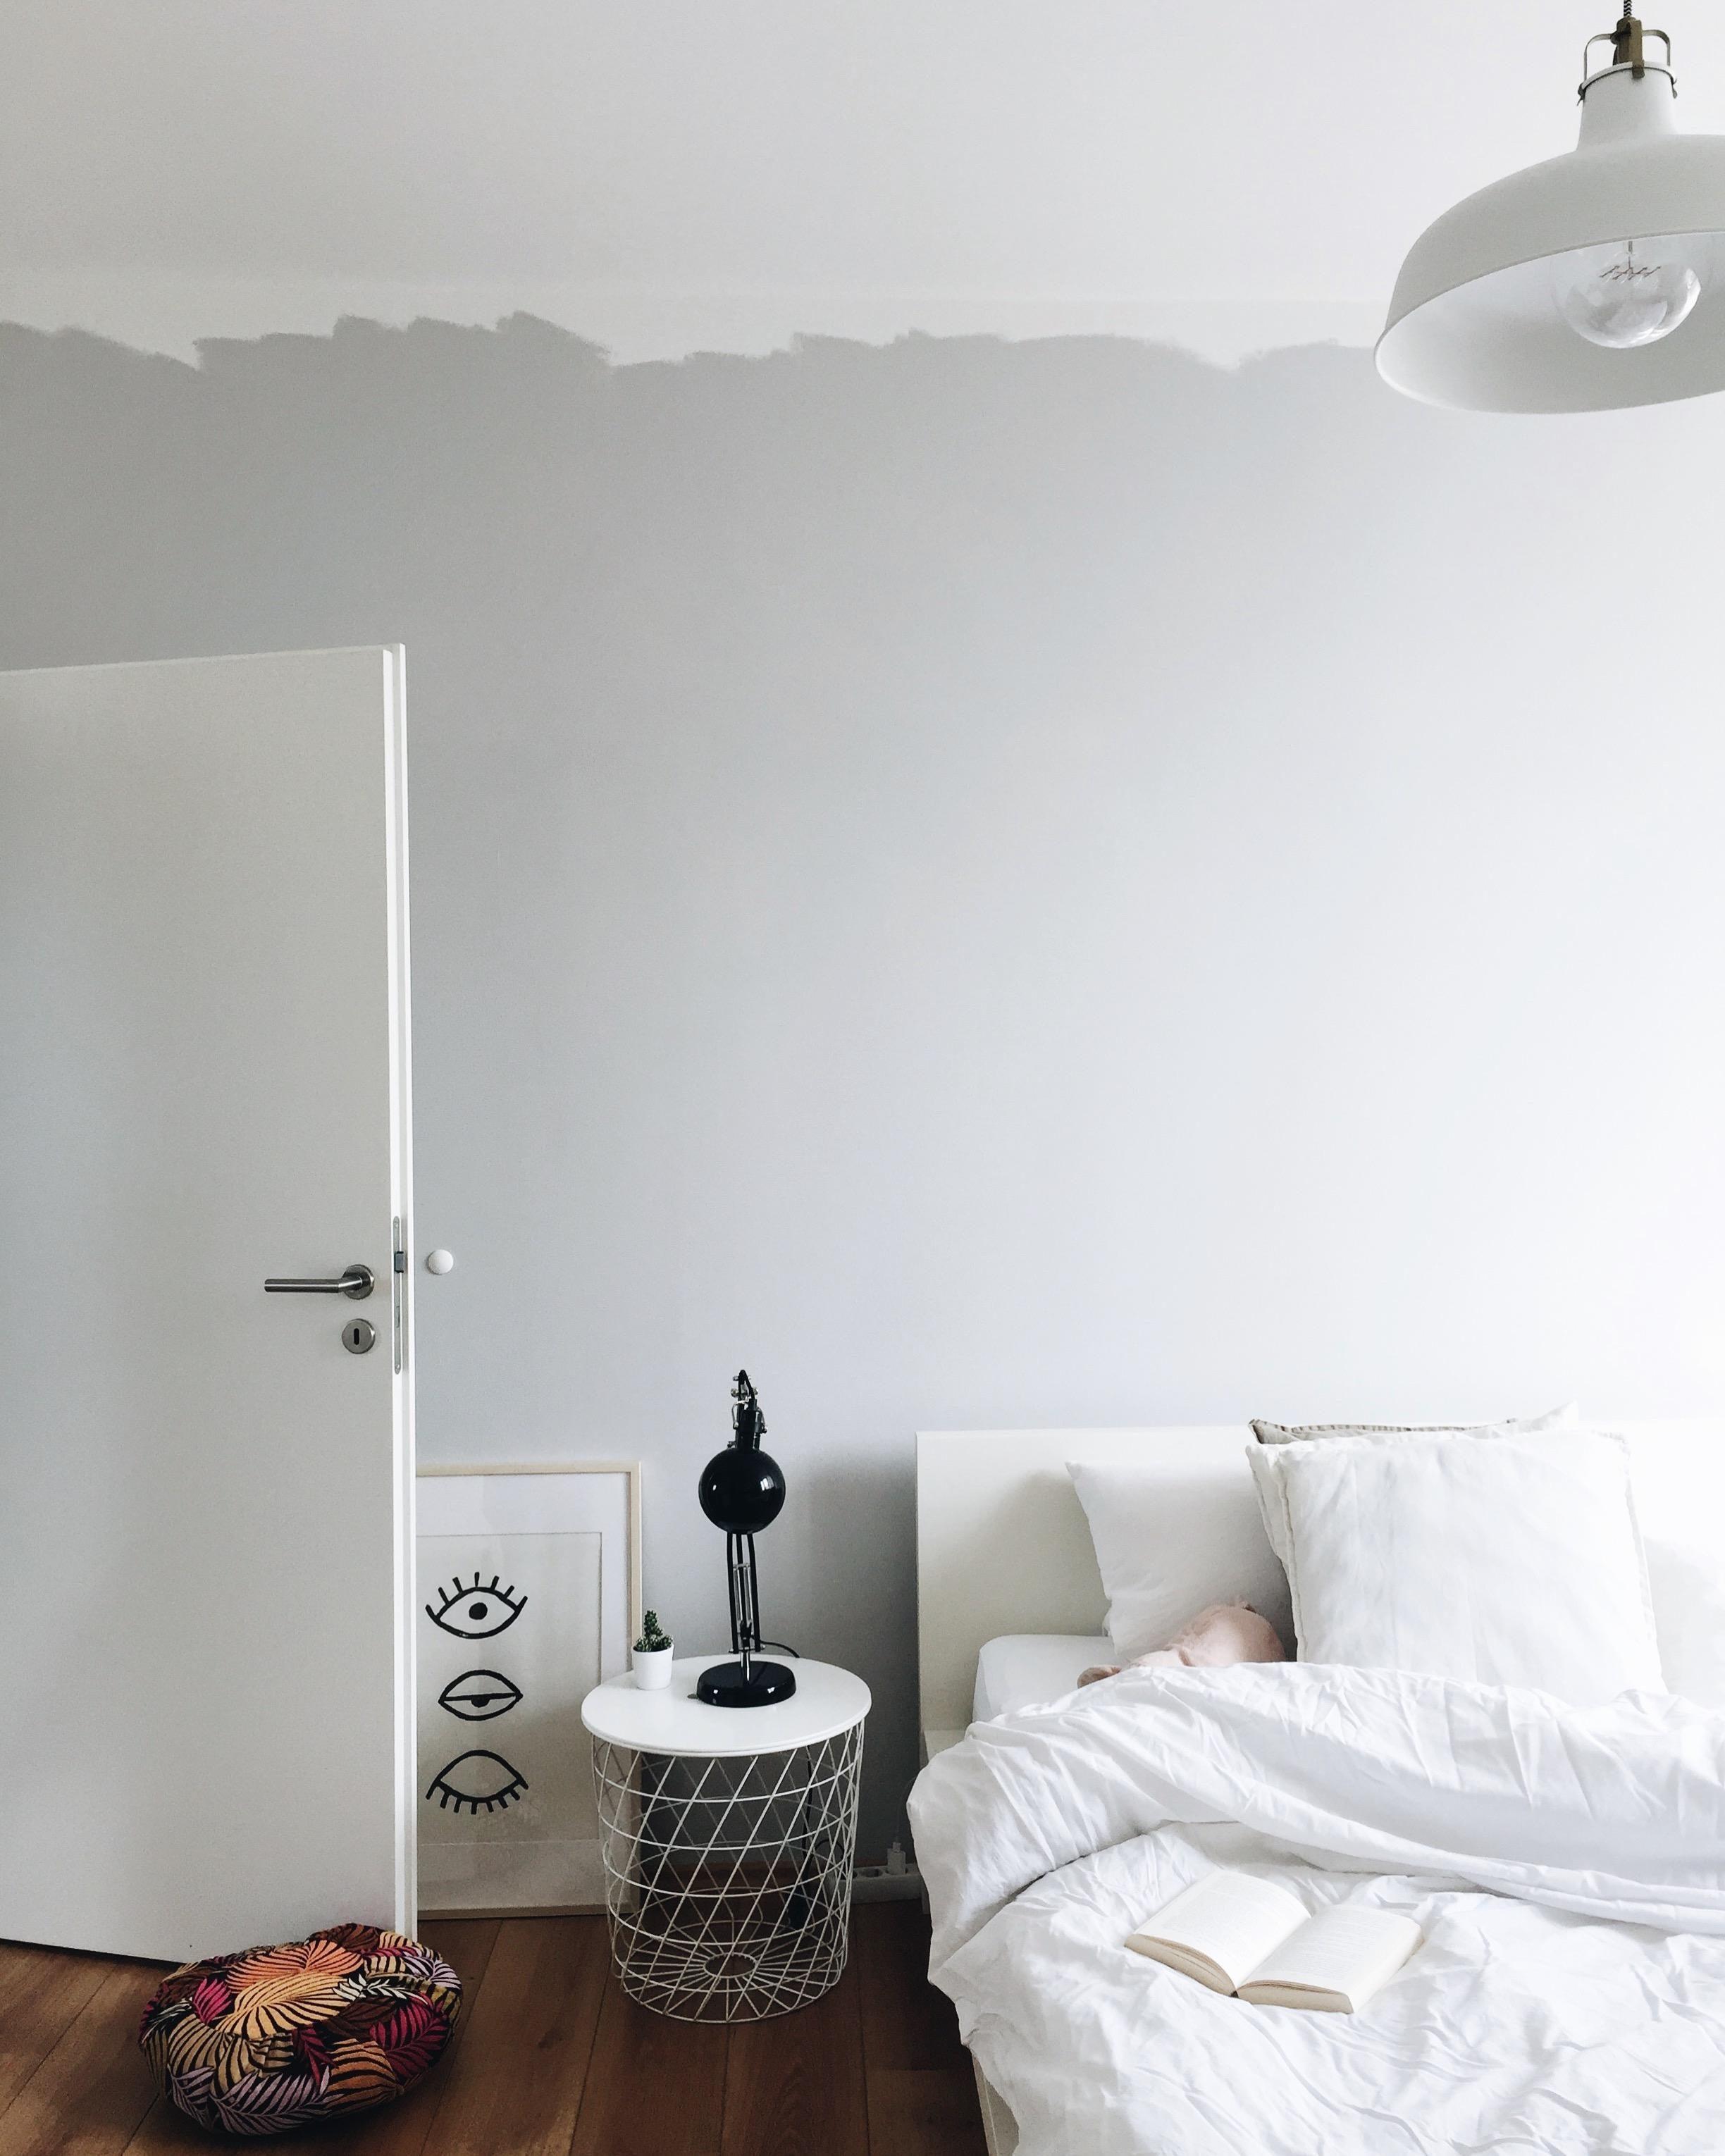 Undone Look im Schlafzimmer? Geht gut wie wir finden ! #undonelook#minimalism#clean